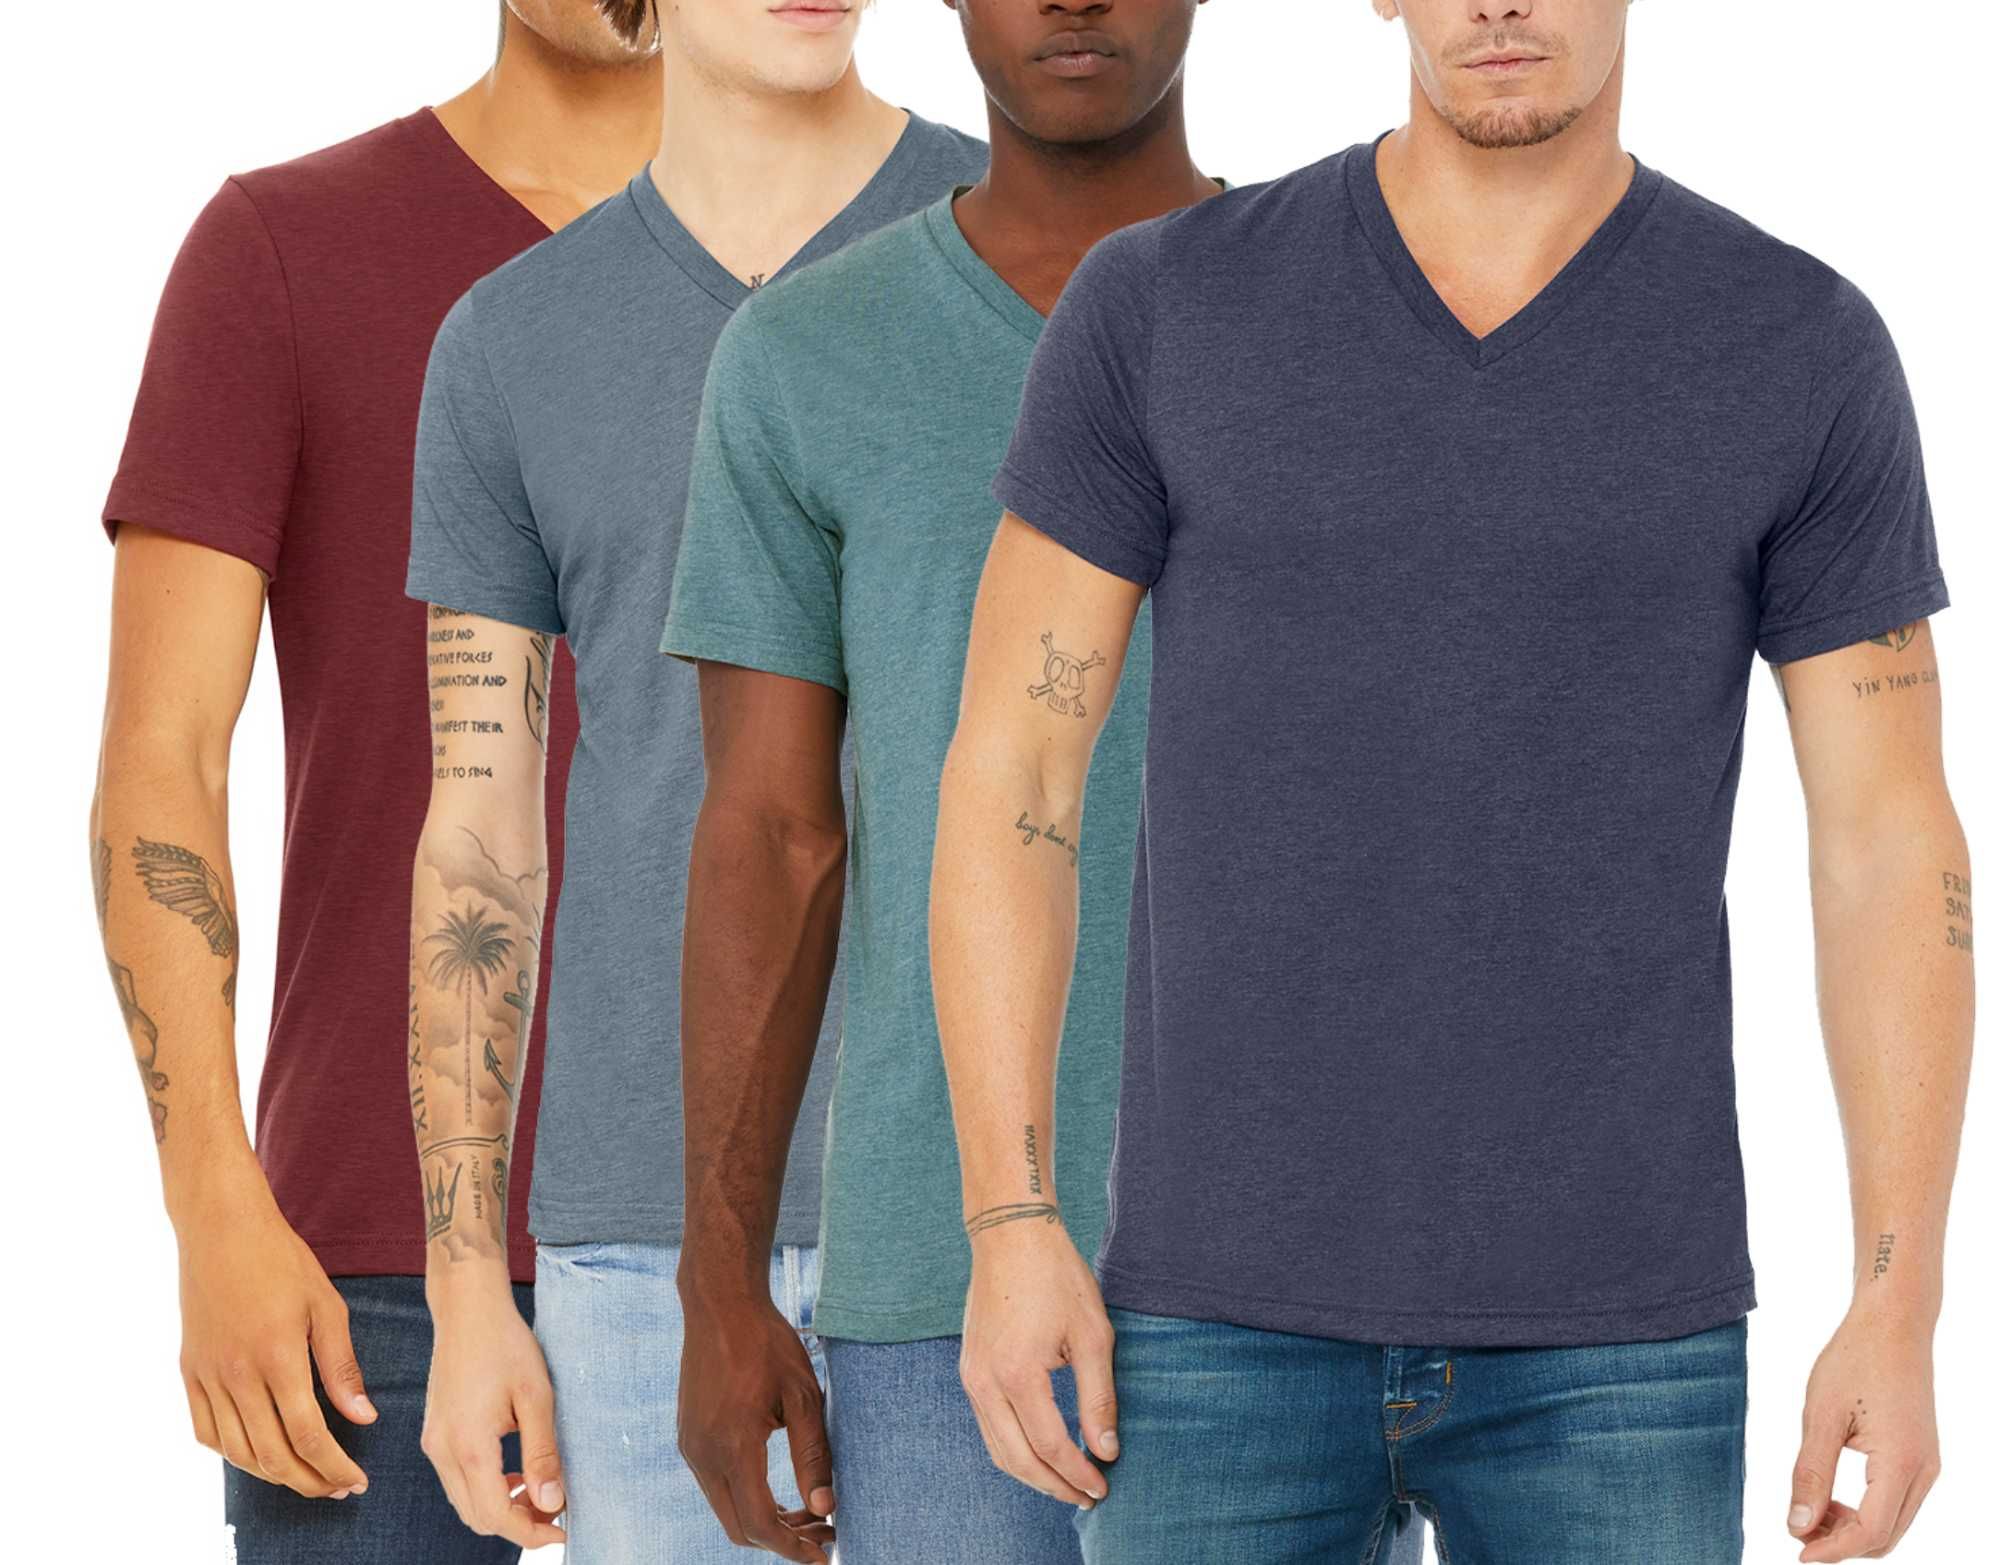 Американские футболки Kennedy Todd, цена за 4 штуки, размер XL